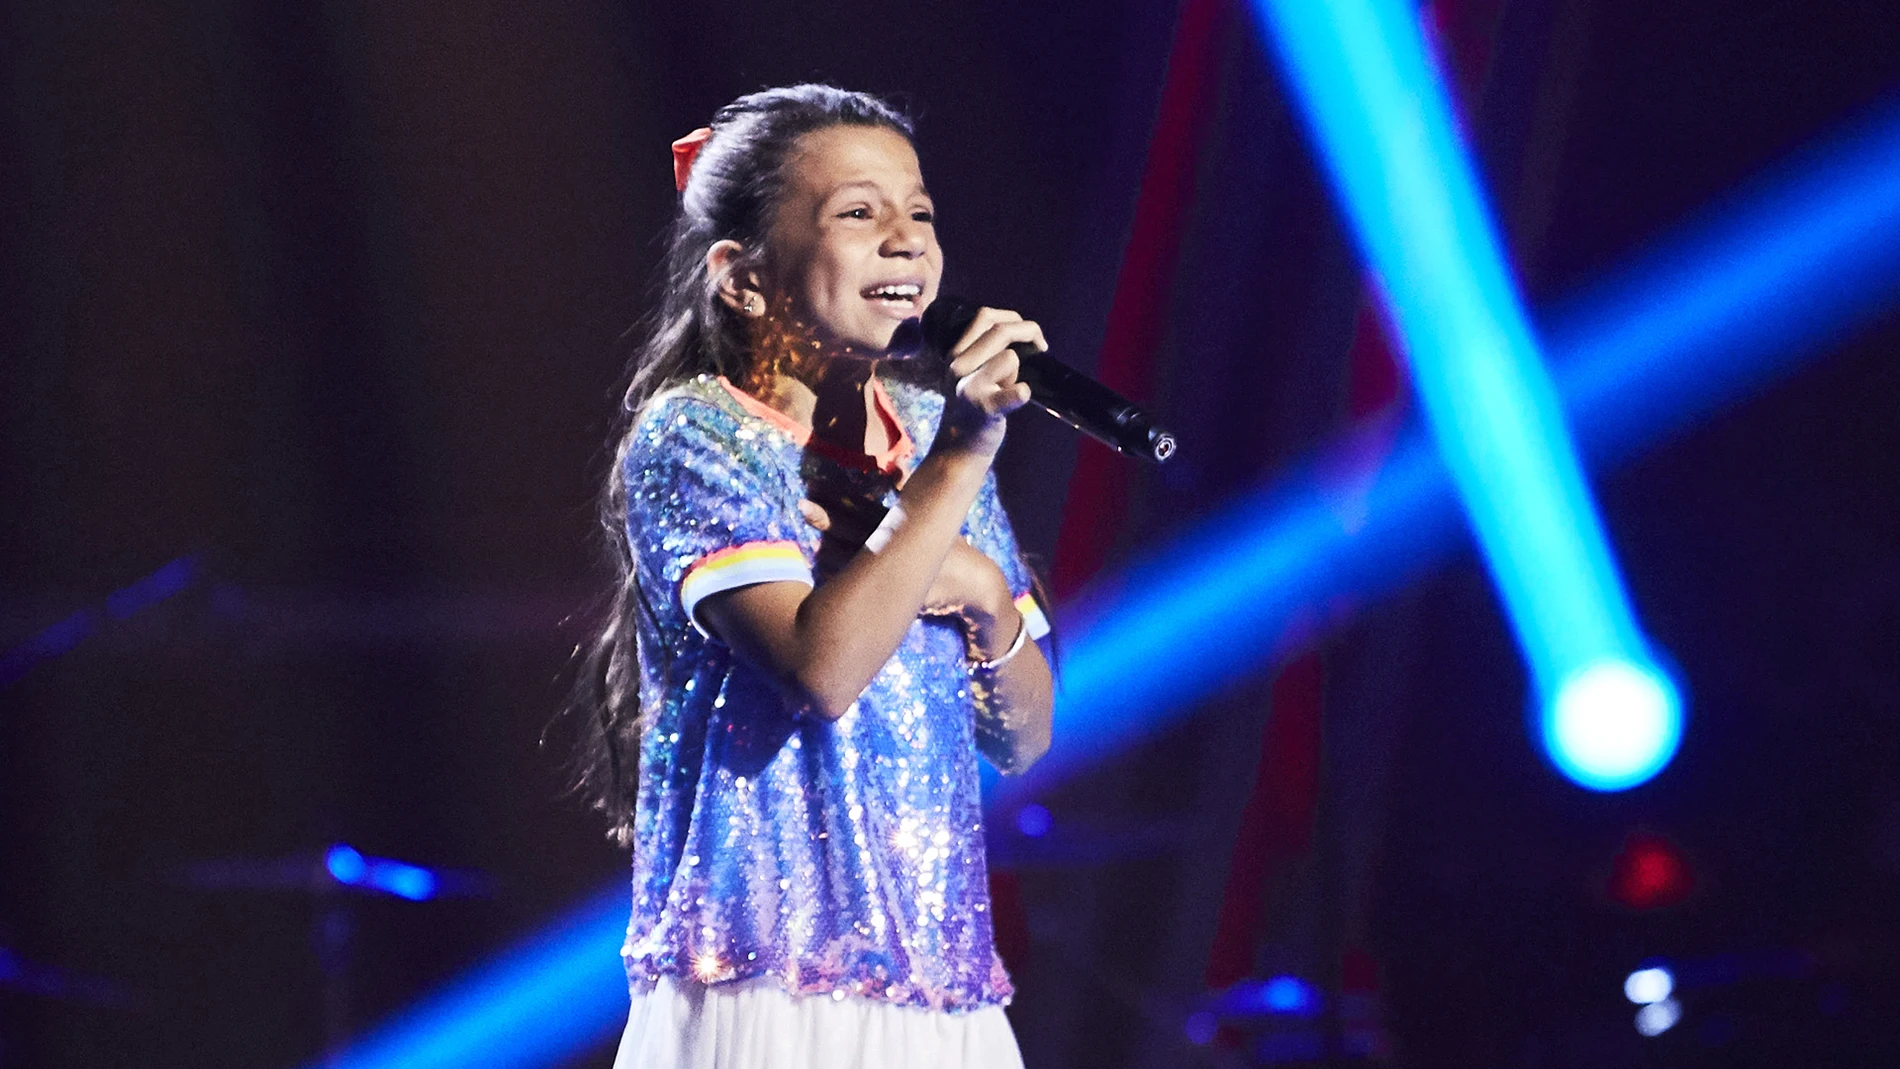 Avance exclusivo de 'La Voz Kids': una pequeña talent brillará cantando 'Shallow'